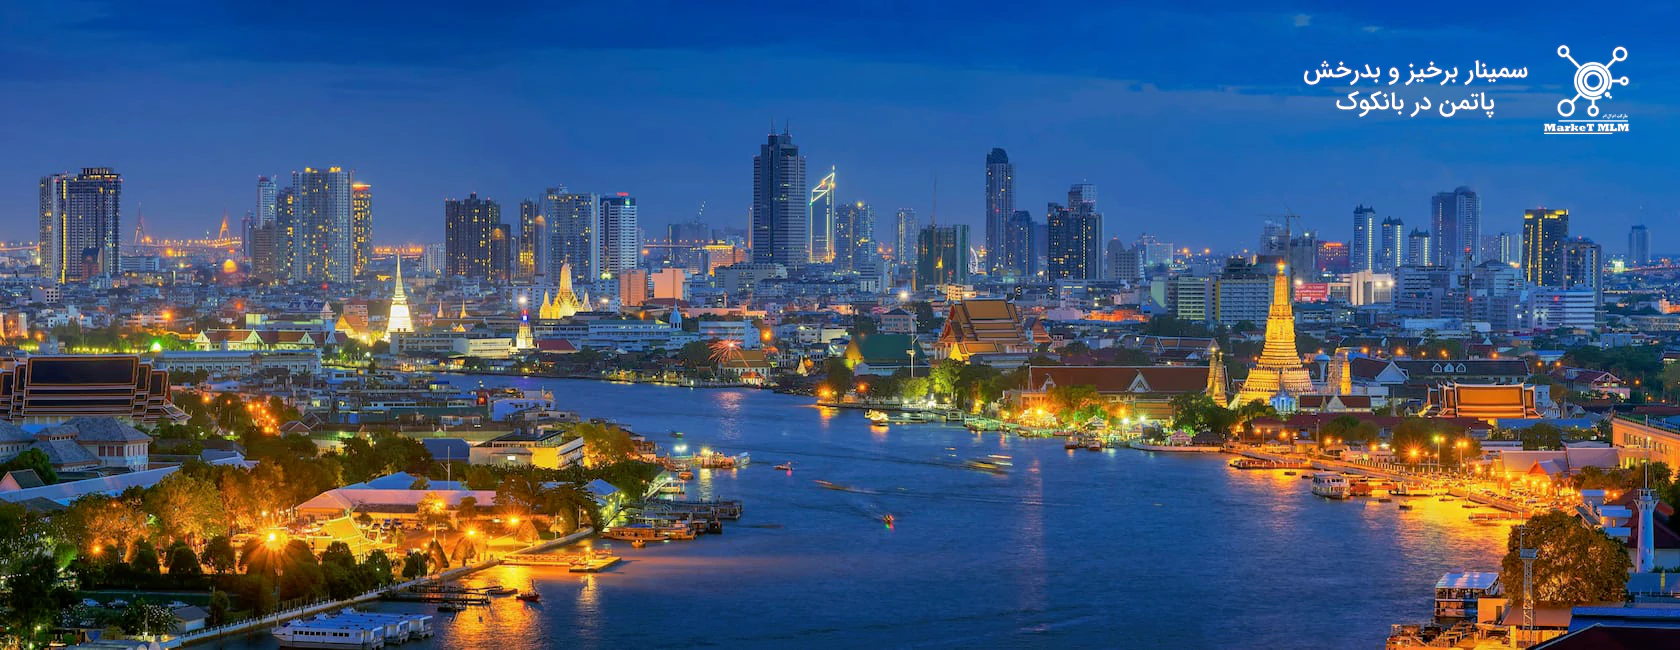 سمینار برخیز و بدرخش در بانکوک